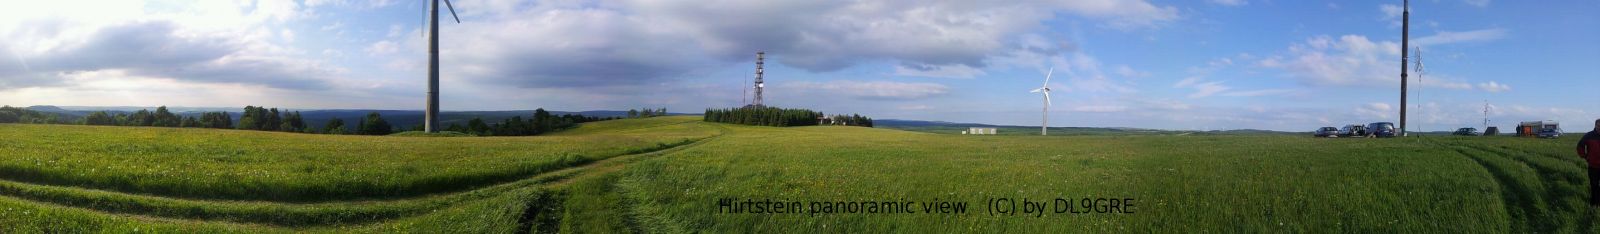 Jun12 Panorama